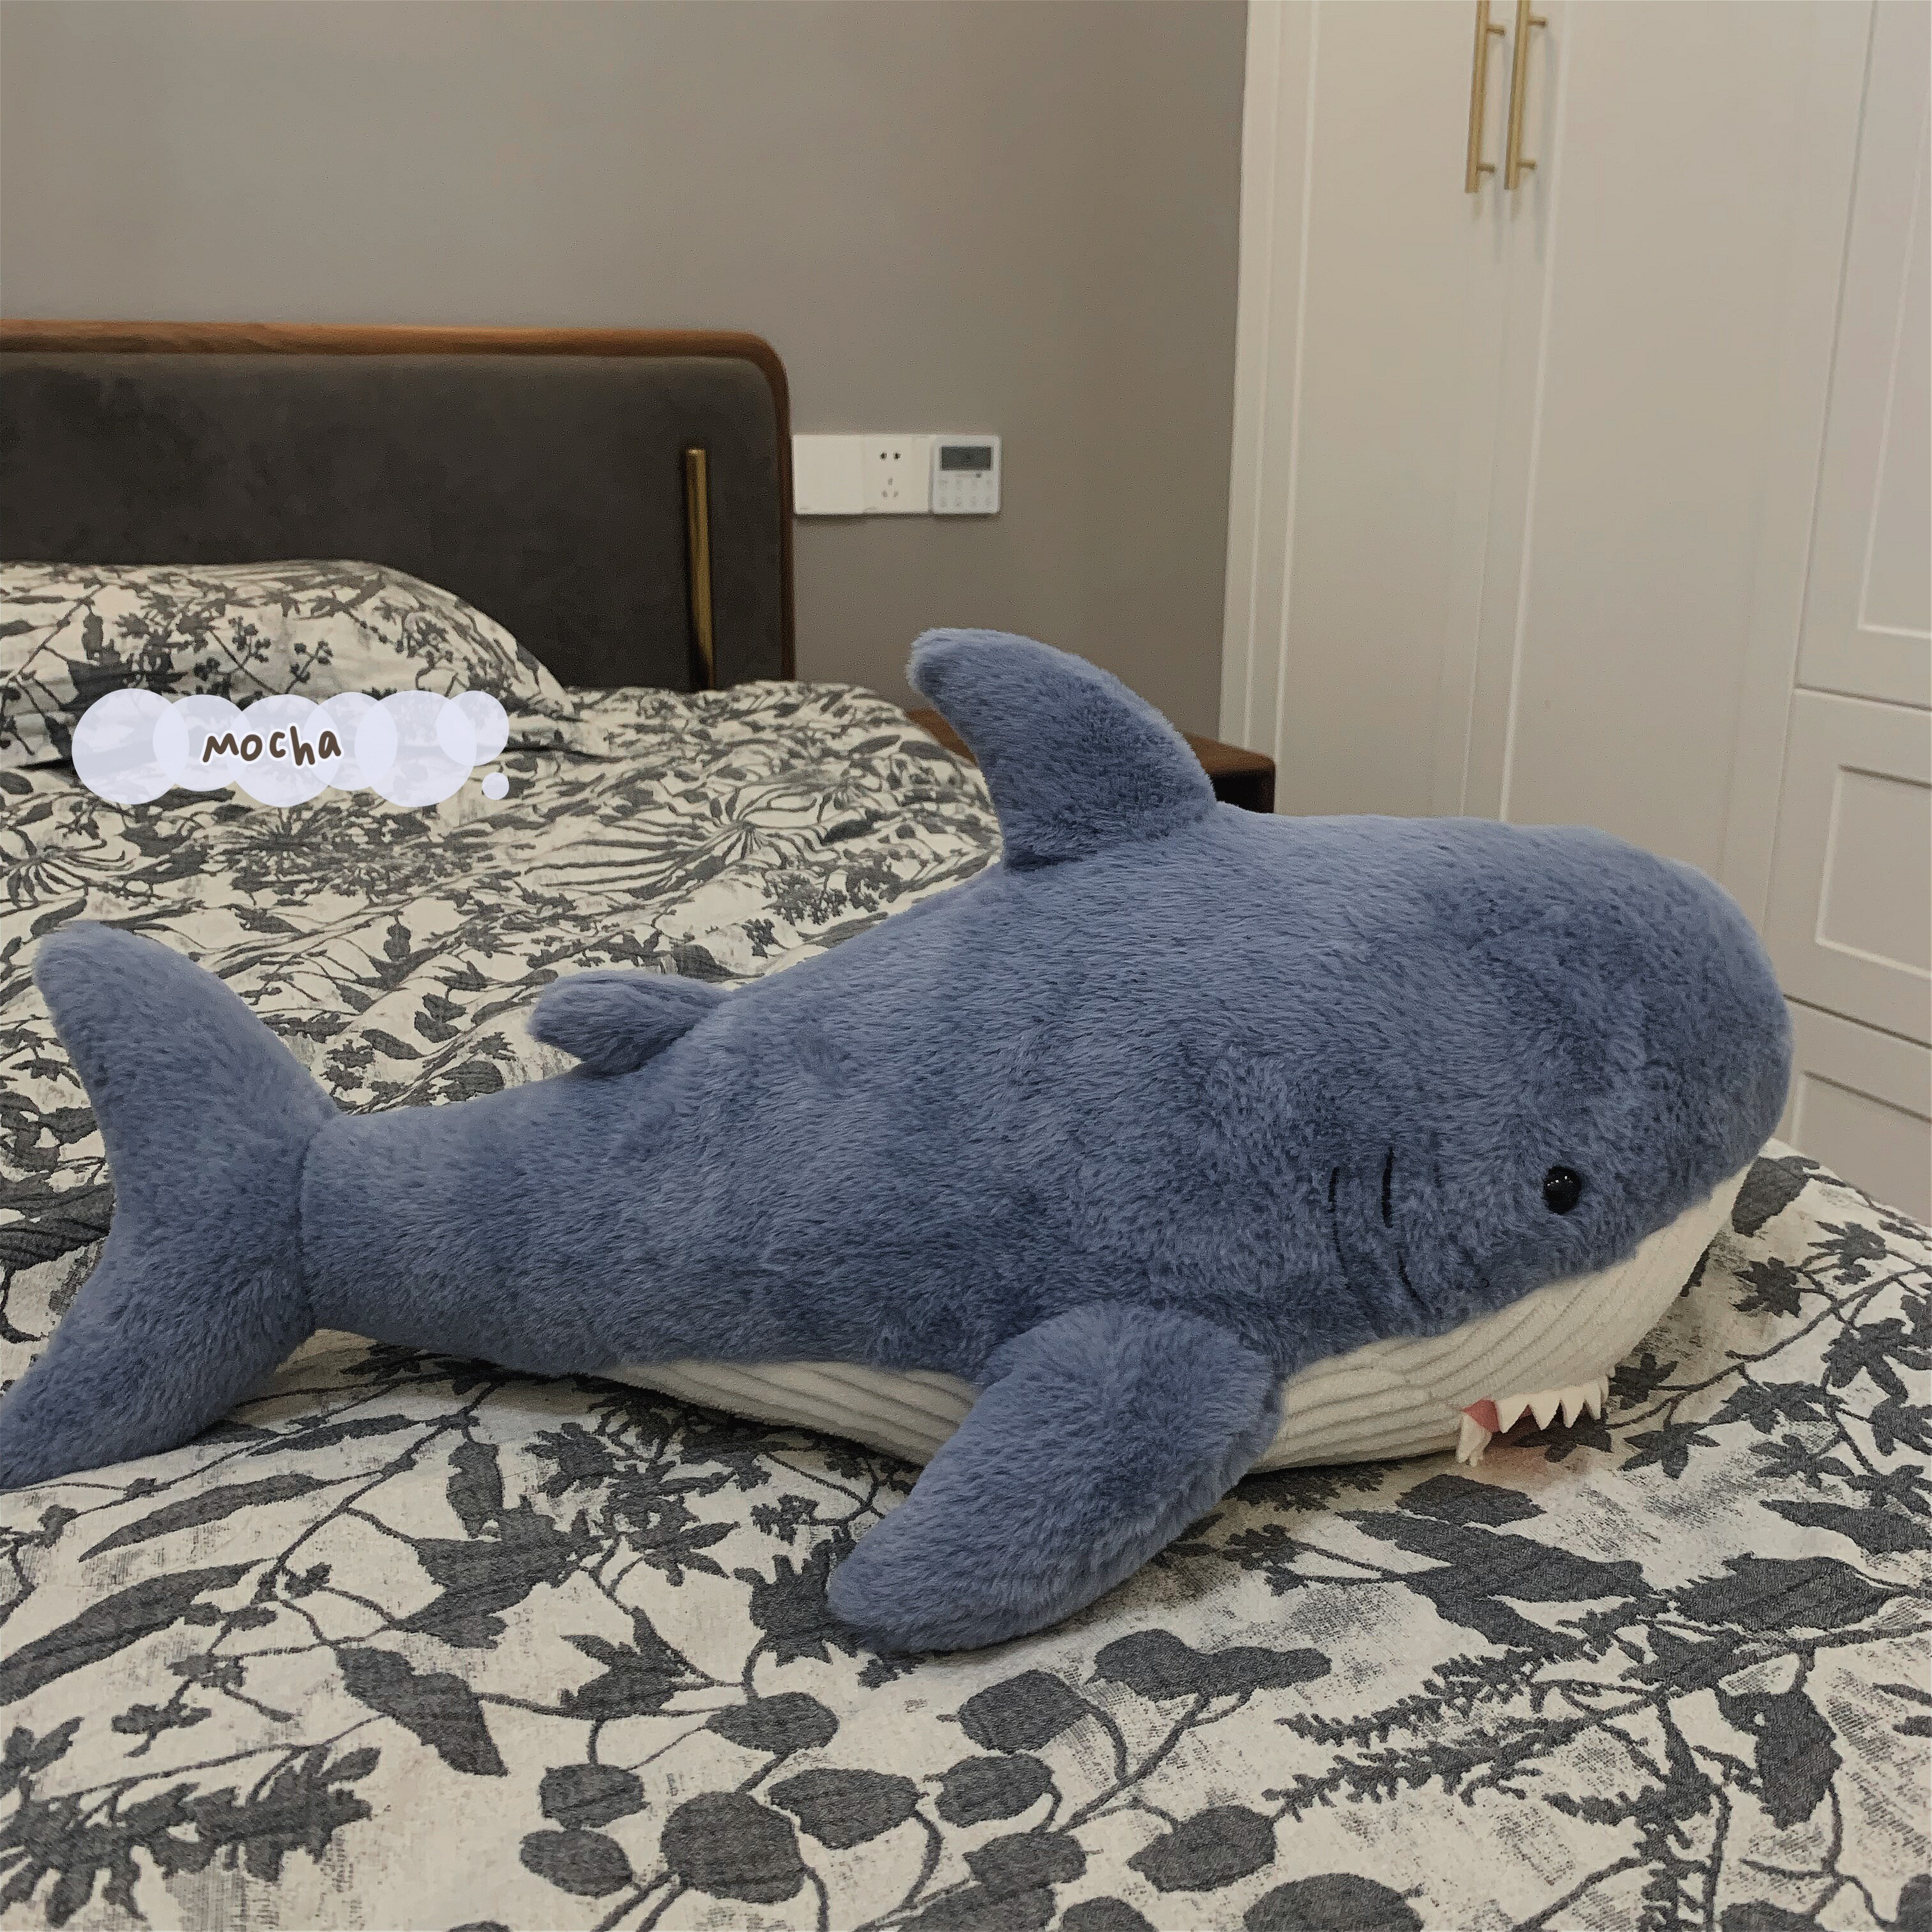 抱枕 可愛鯊魚睡覺毛絨玩具靠墊 沙發床上抱著玩偶布娃娃禮物【不二雜貨】